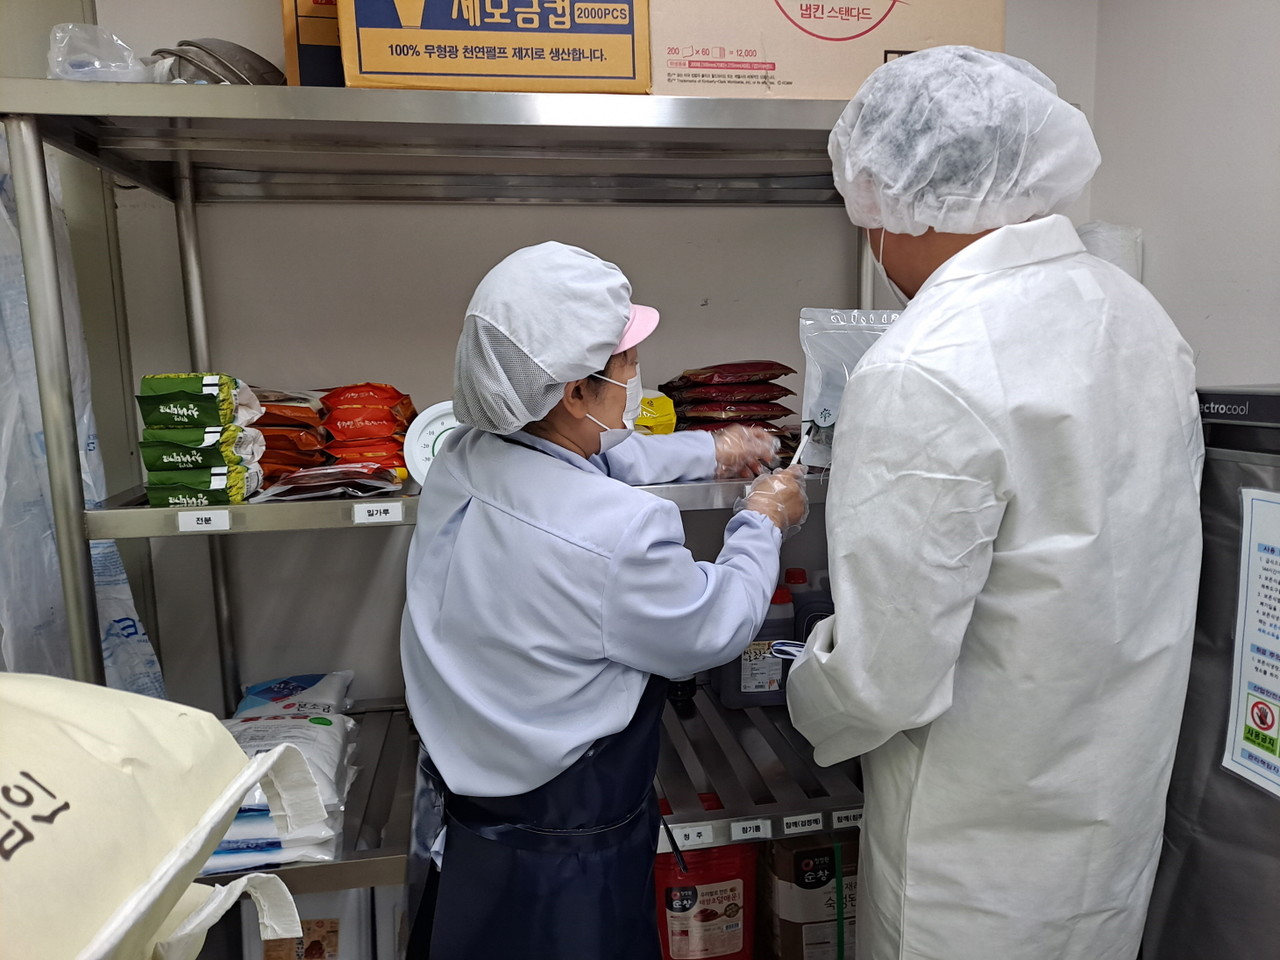 김천시는 시민이 안전한 식품을 소비할 수 있도록 오는 18일부터 22일까지 뷔페․배달음식점 등의 위생관리 상태를 집중 점검한다.